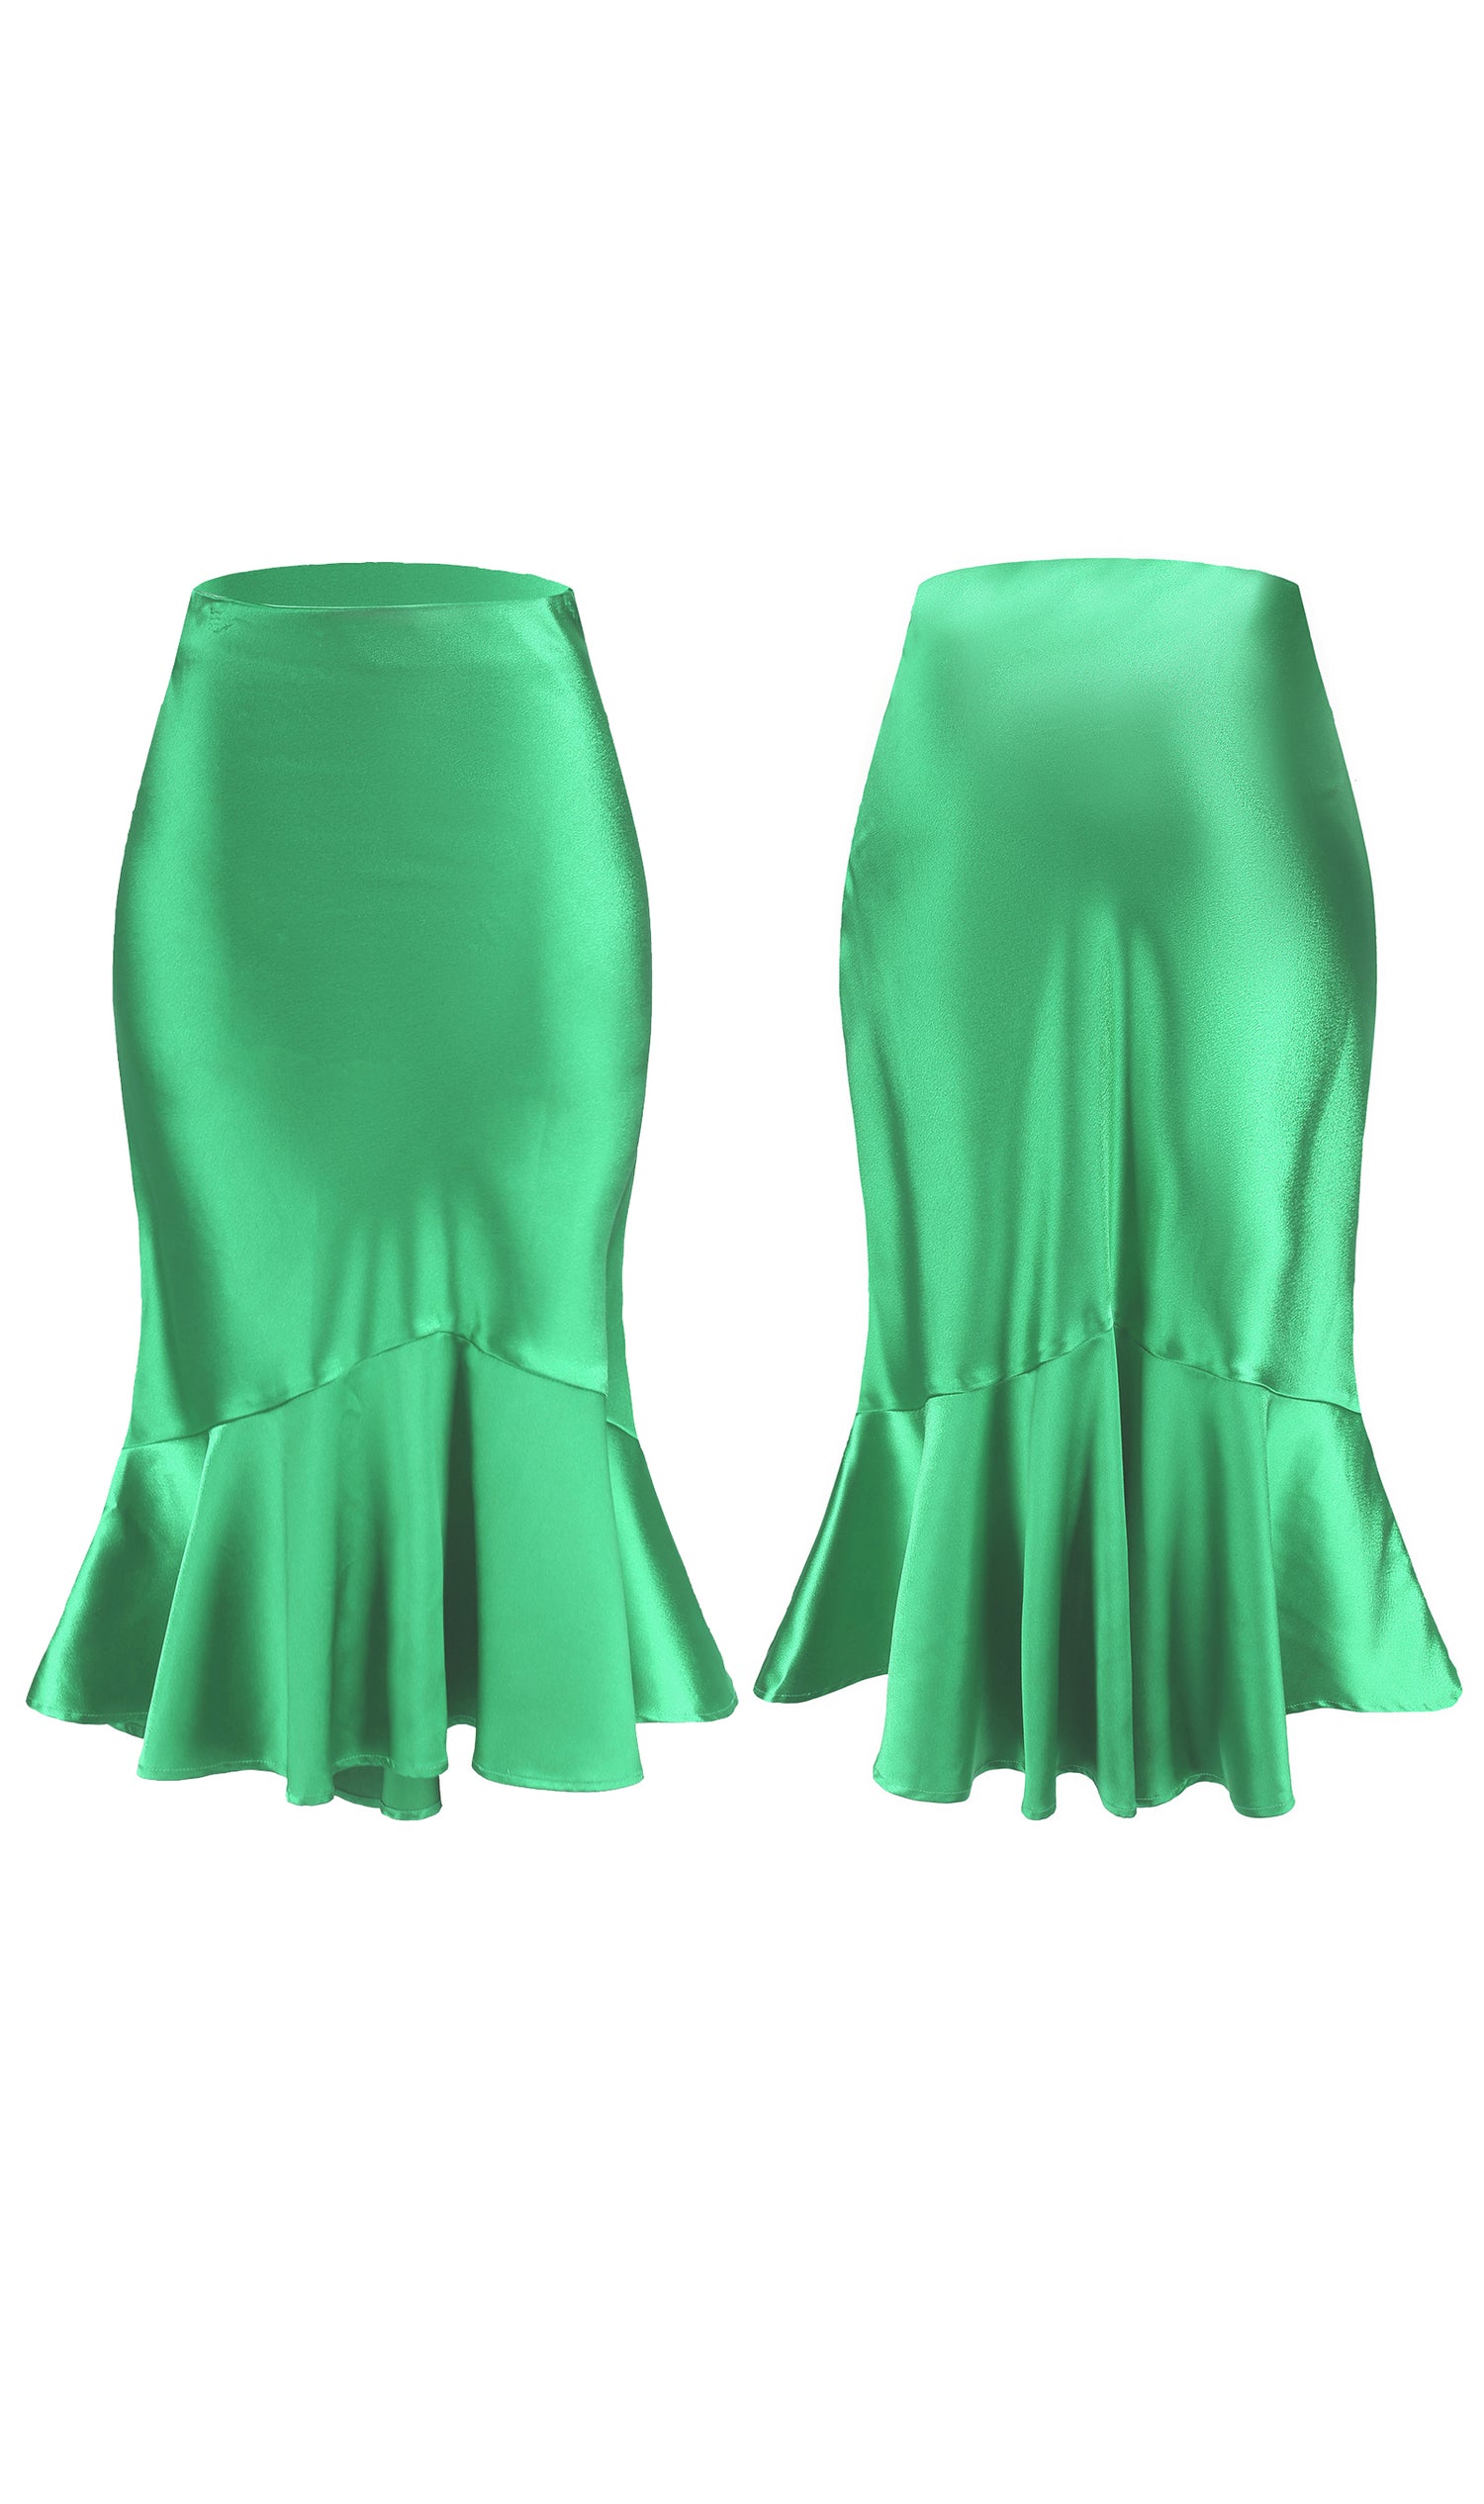 ALCEA ROSEA 女式高腰缎面半身裙鱼尾丝质半身裙紧身弹力美人鱼铅笔中长裙绿色